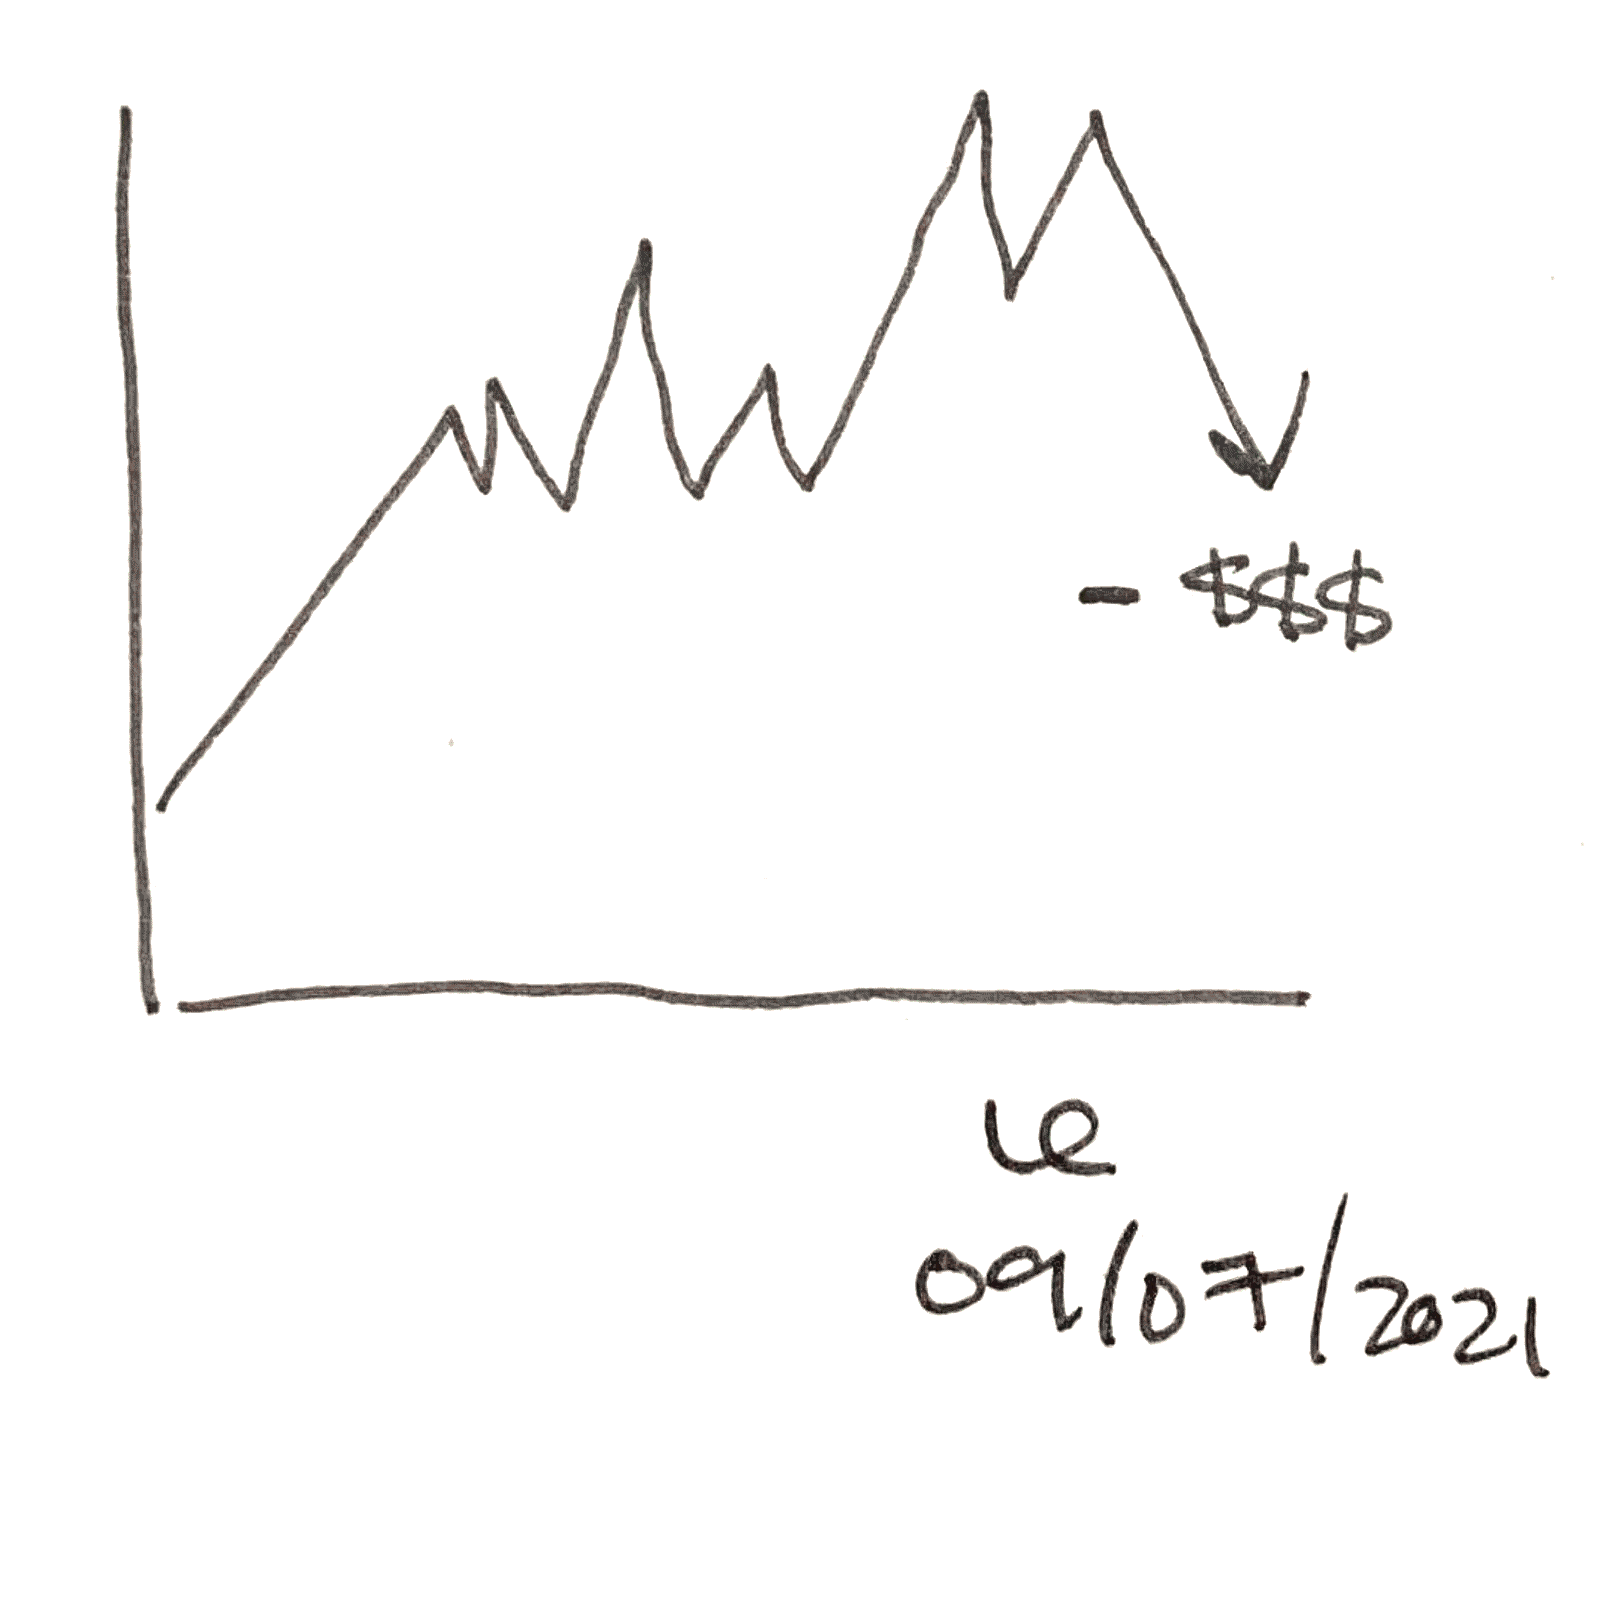 sketch of downwards chart